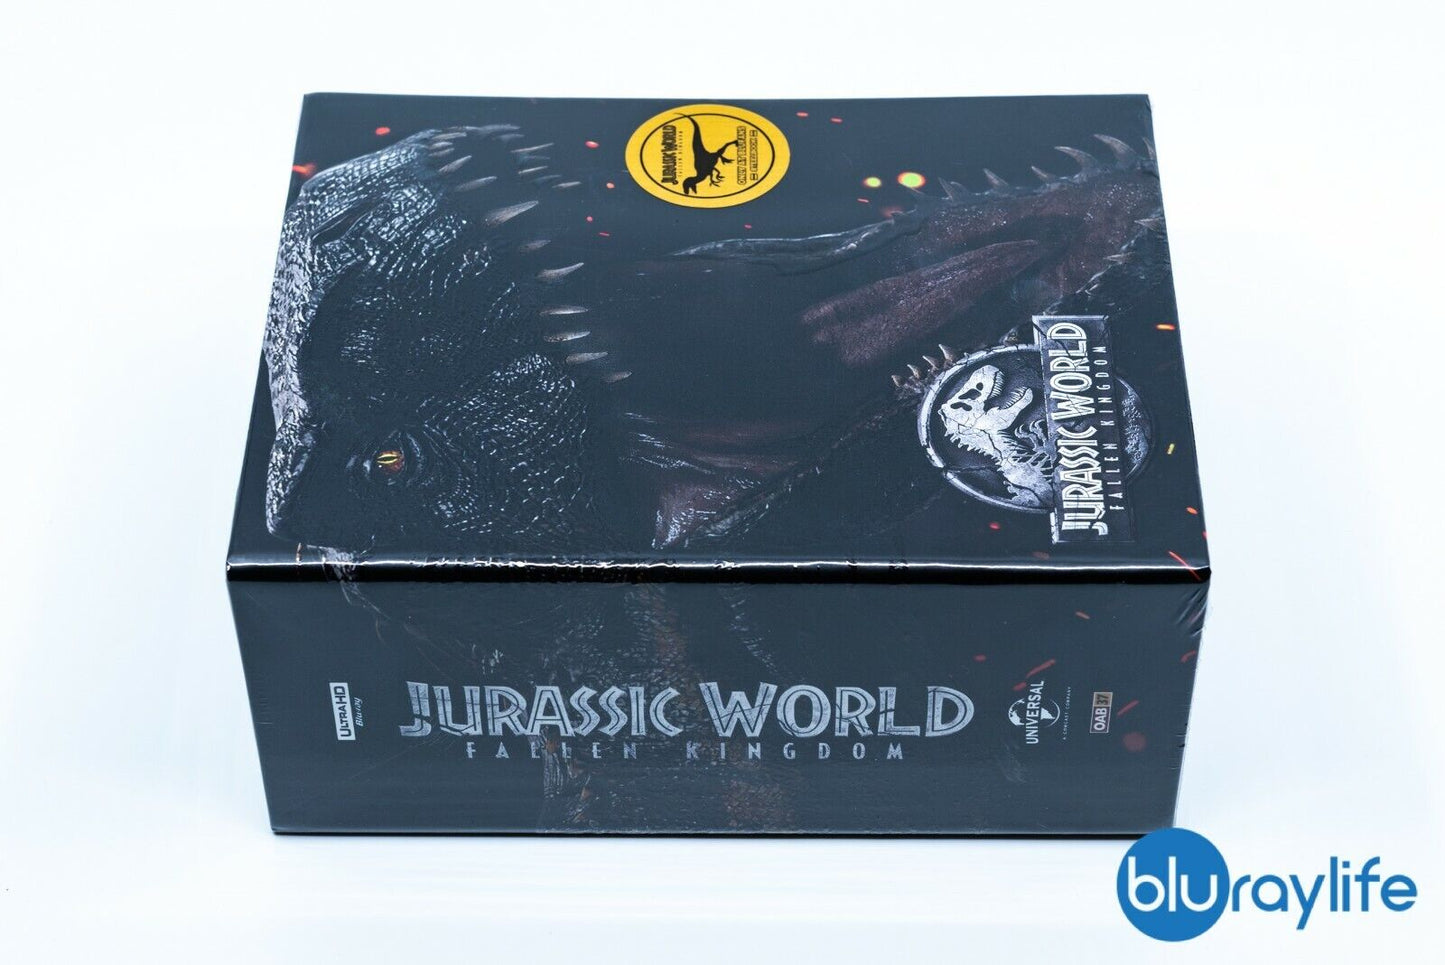 Jurassic World: Fallen Kingdom 4K+3D+2D  Blu-ray Steelbook Blufans OAB #37 One Click Box Set